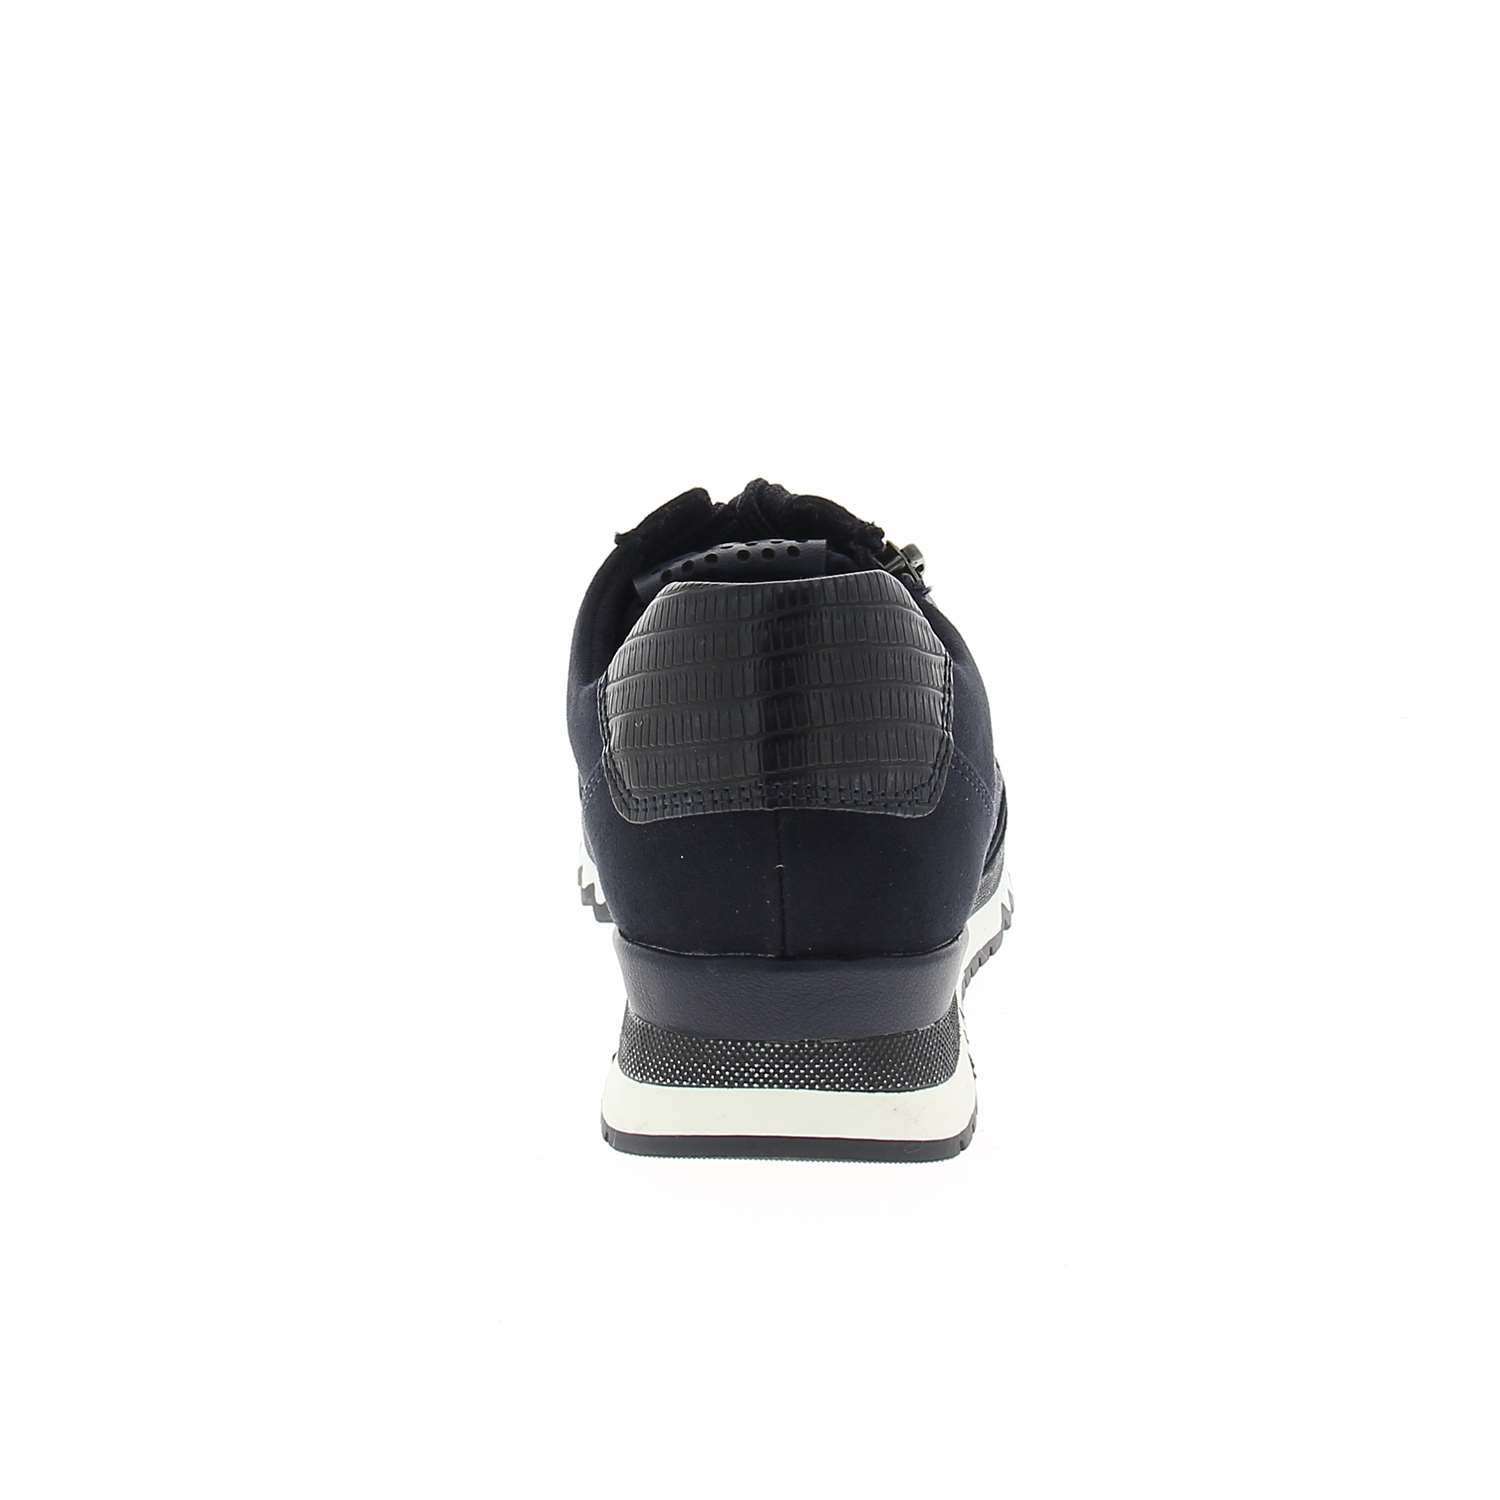 04 - MAKKINO - MARCO TOZZI - Chaussures à lacets - Croûte de cuir